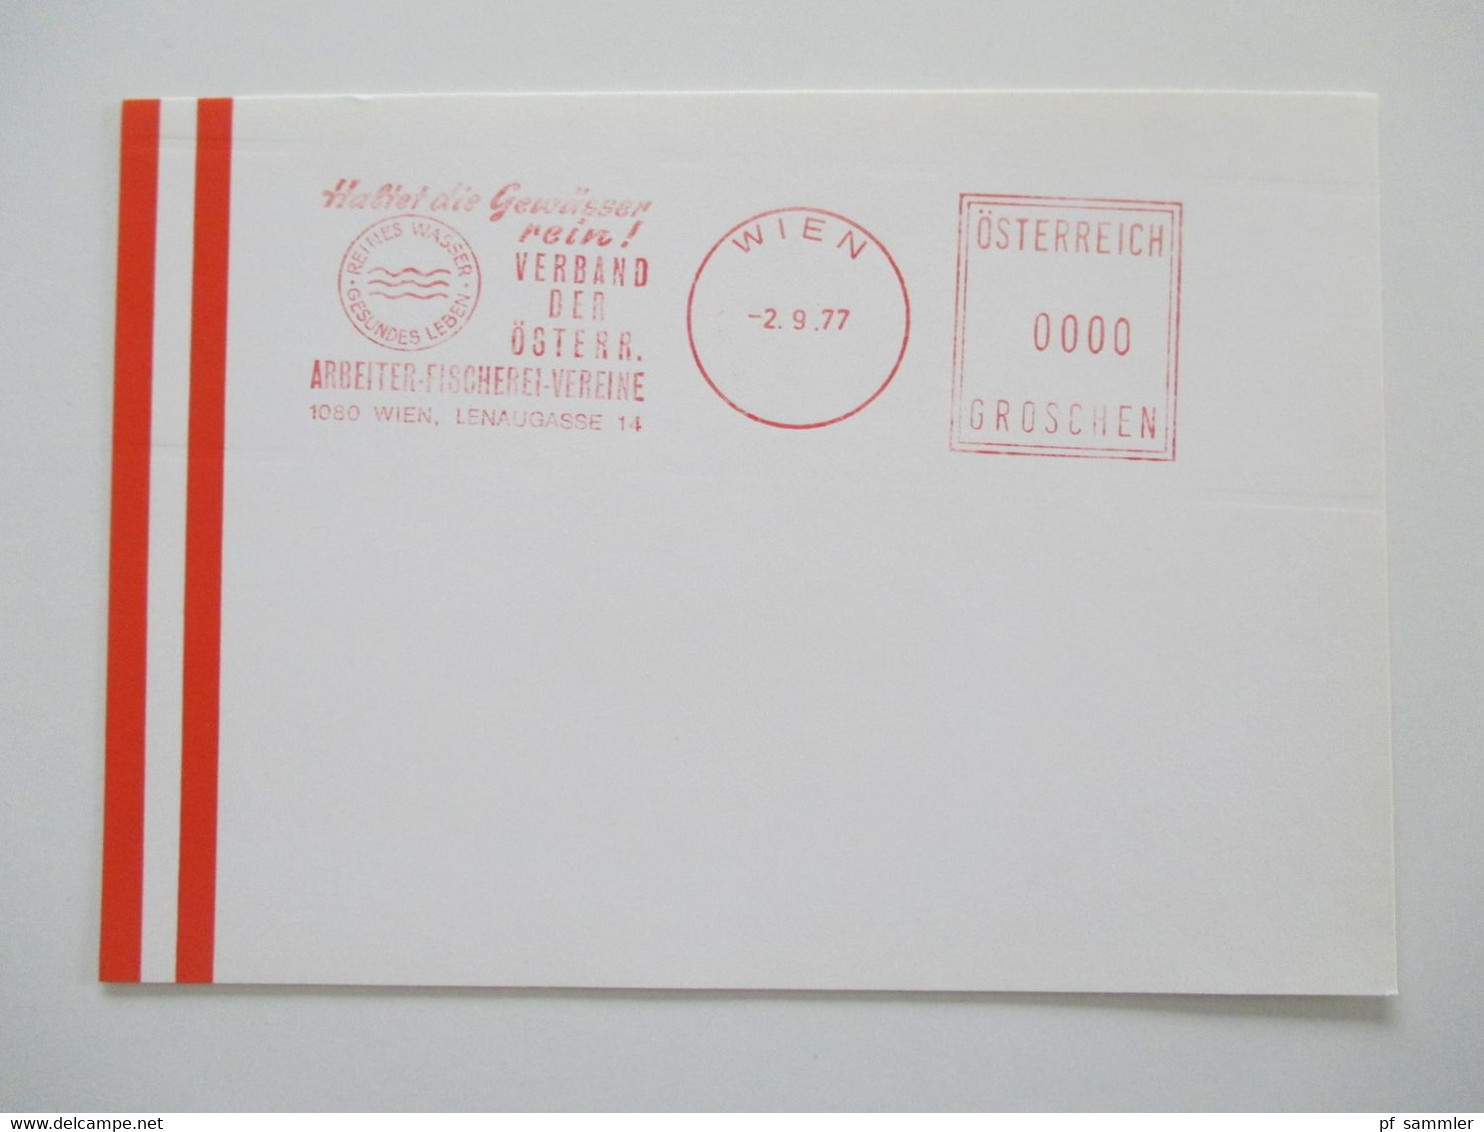 Österreich 1976 - 78 Freistempel Mit Wert 0000 Groschen Insgesamt 29 Stempelbelege / Blanko Karten Alles Verschiedene St - Lettres & Documents